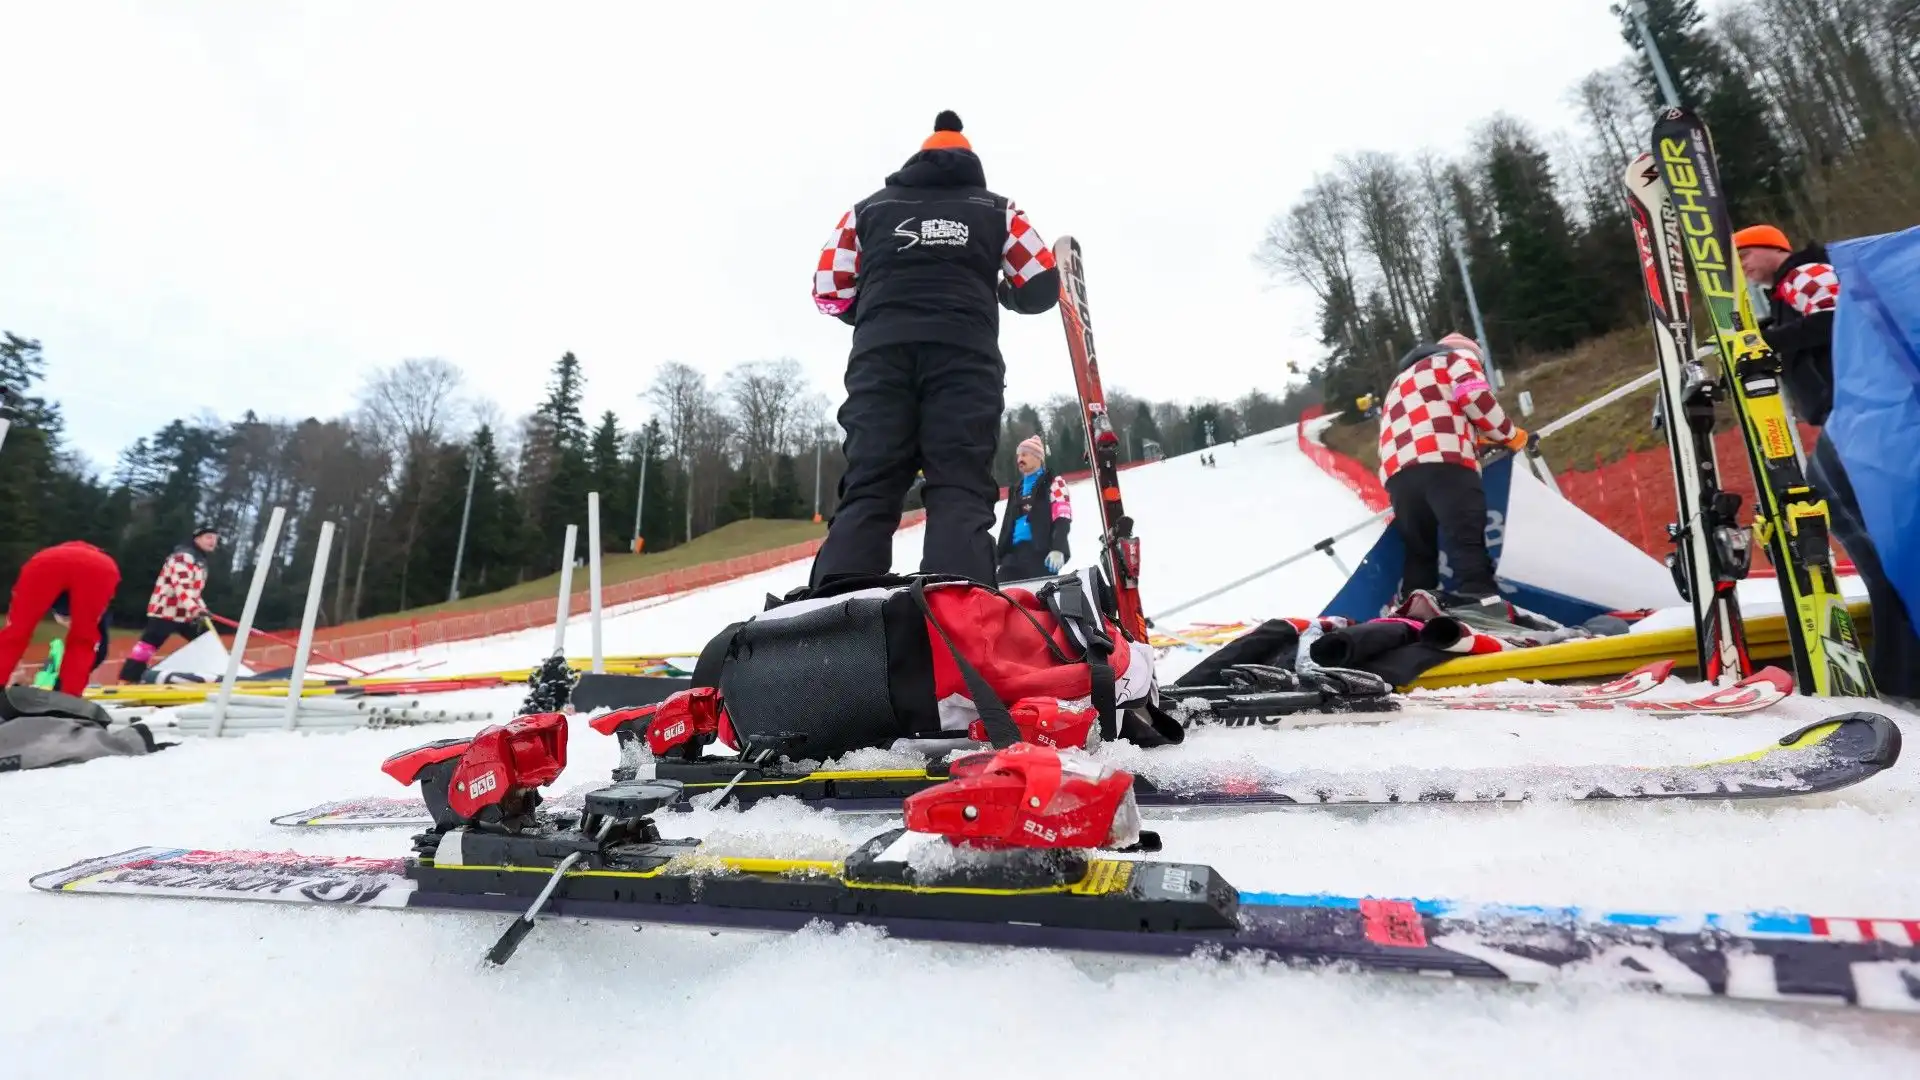 Gli organizzatori hanno annullato il secondo slalom femminile stagionale di Coppa del mondo